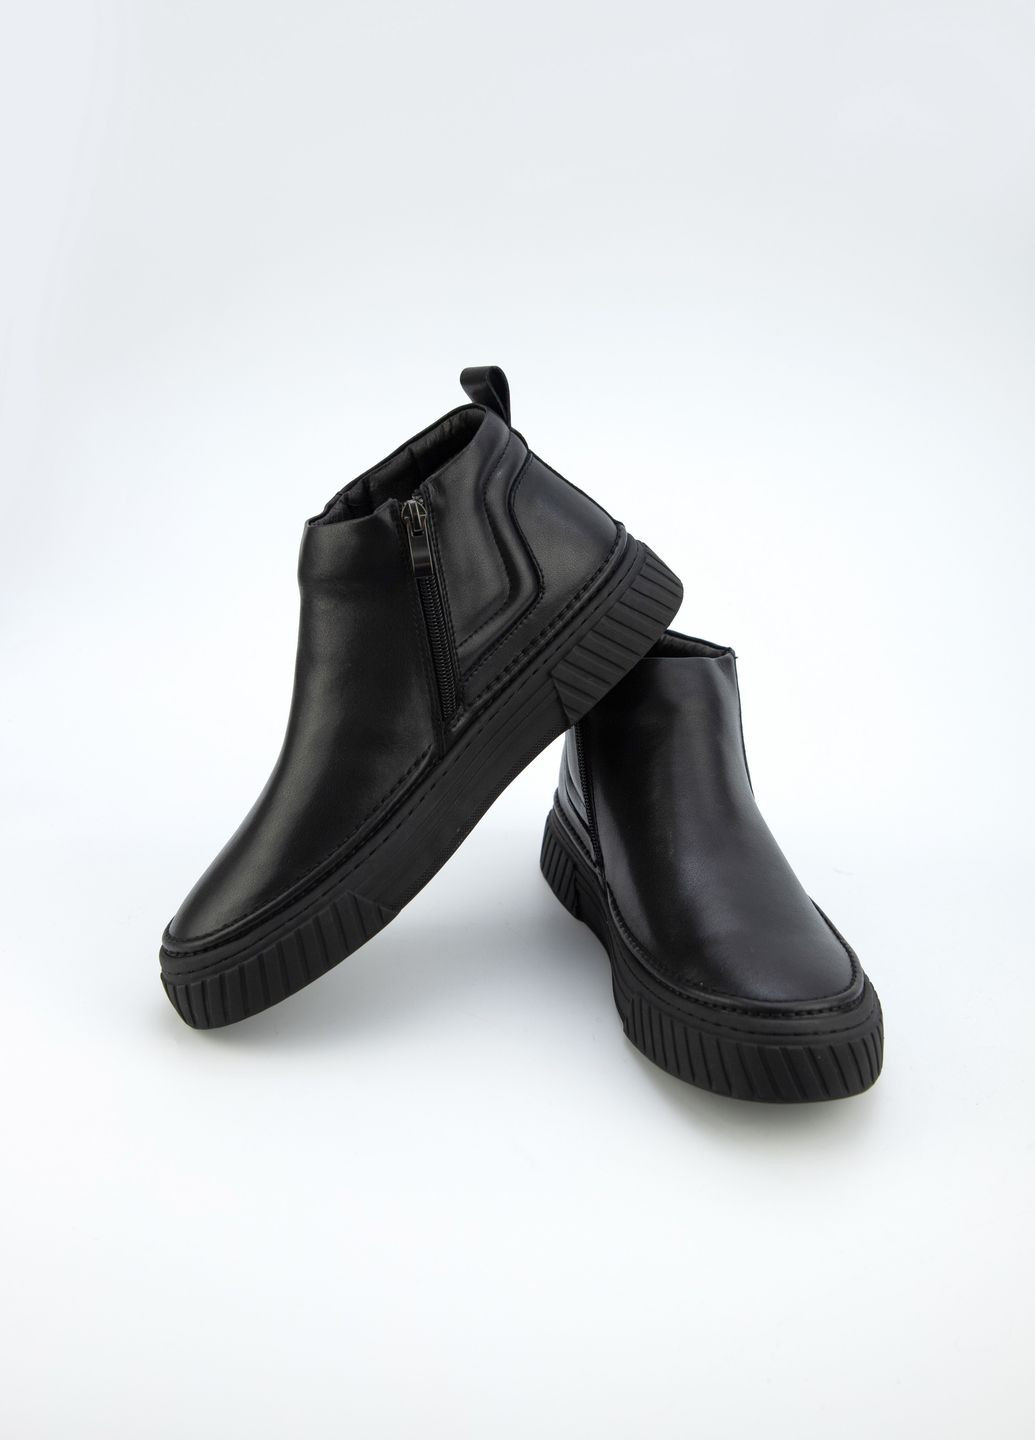 Черные осенние ботинки мужские URBAN TRACE